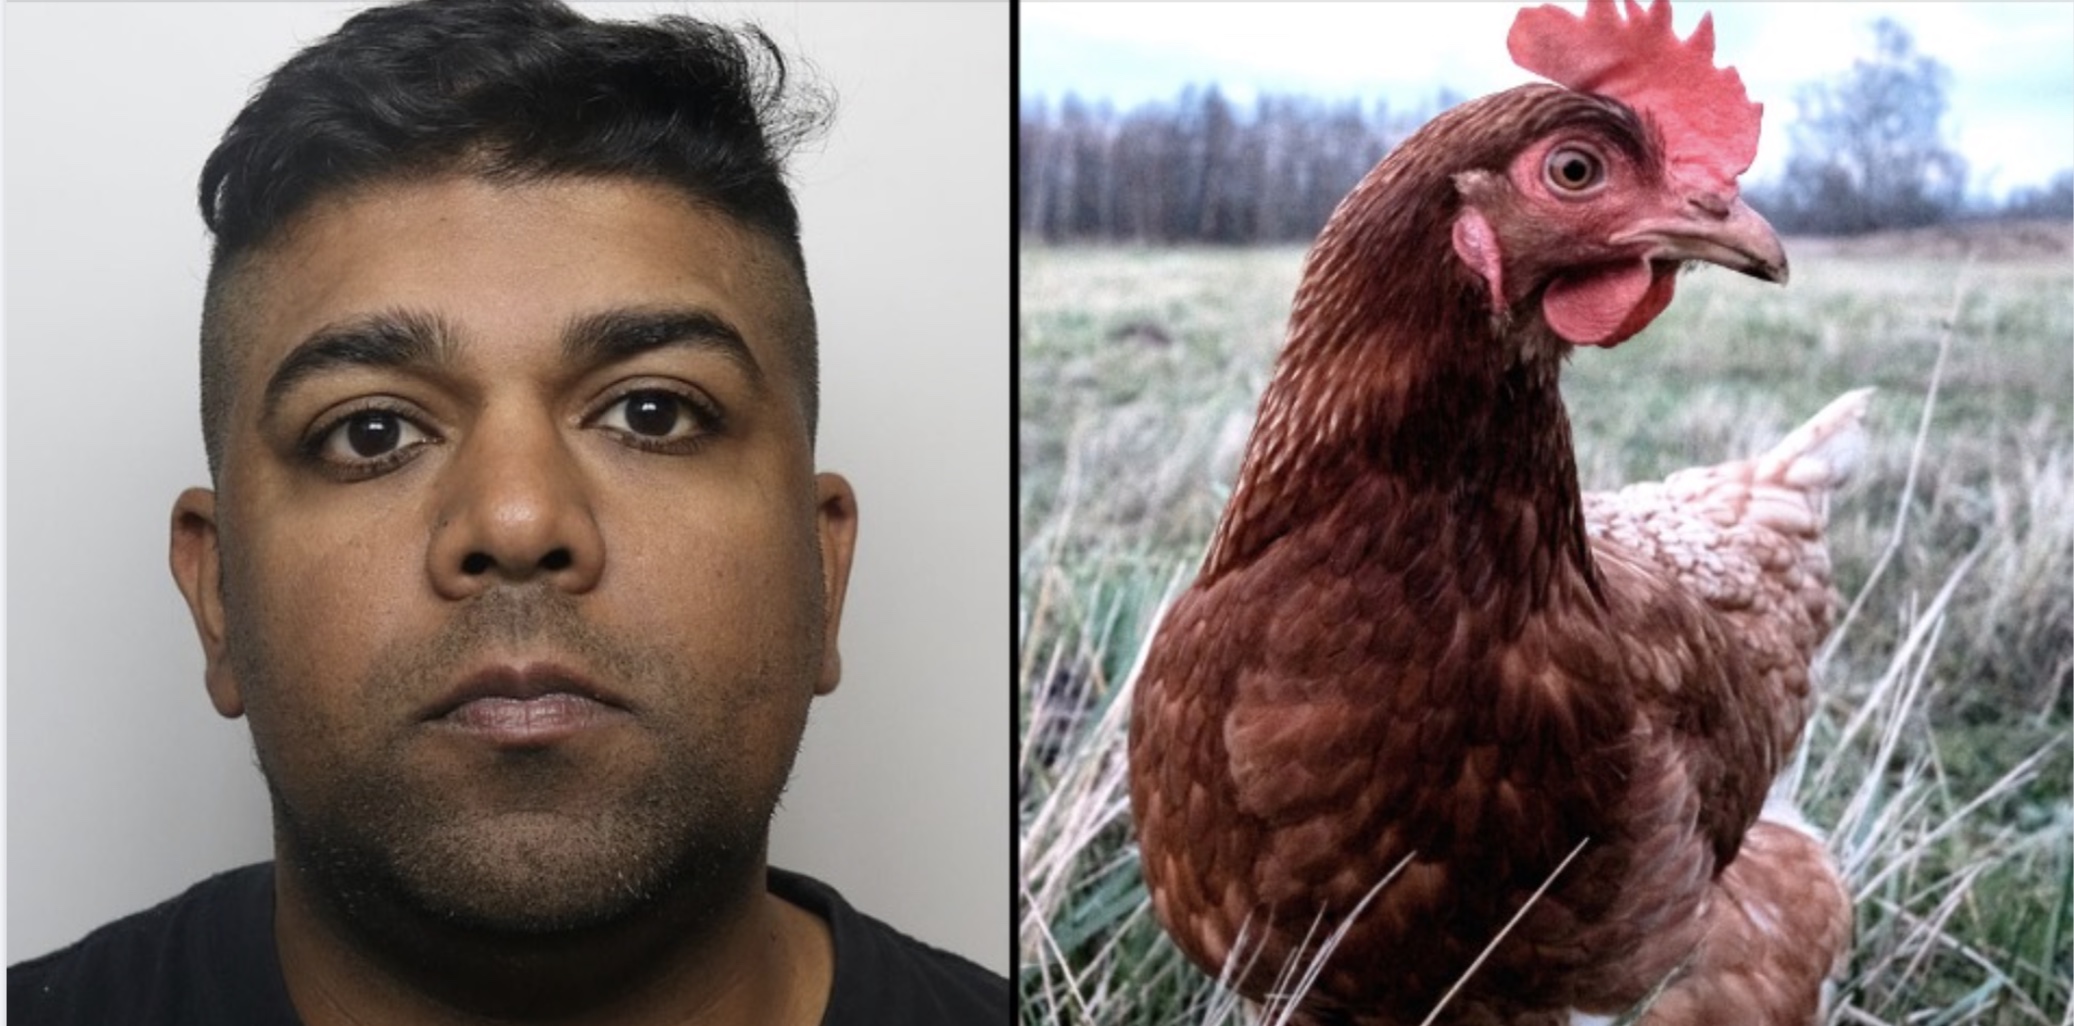 Man die sex had met kippen wordt vervroegd vrijgelaten